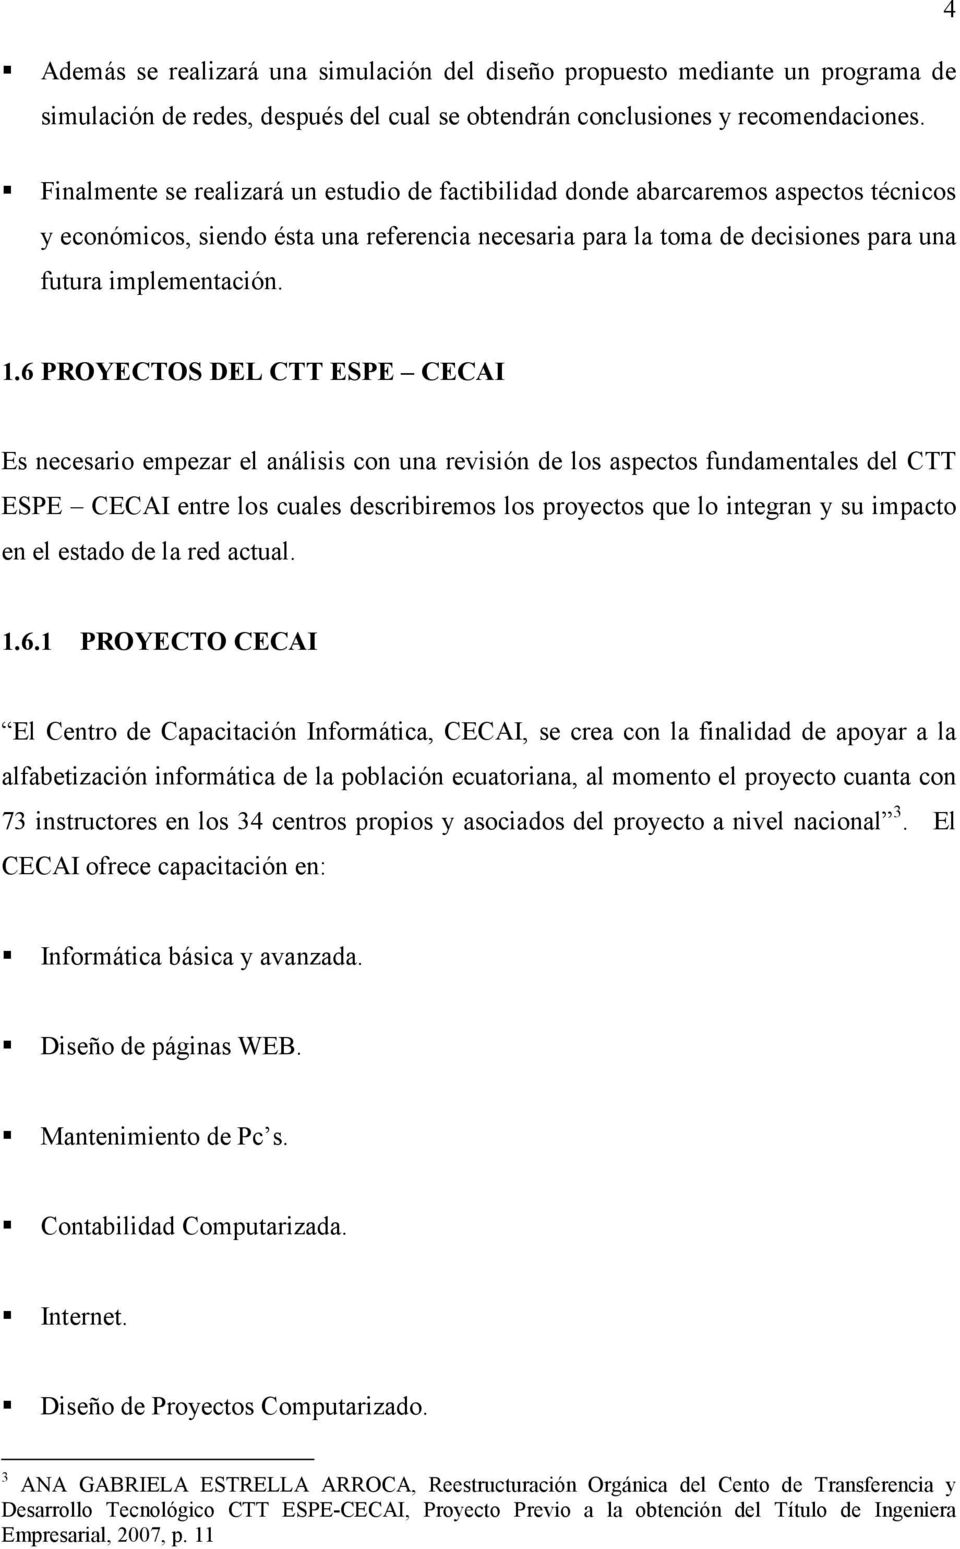 1.6 PROYECTOS DEL CTT ESPE CECAI Es necesario empezar el análisis con una revisión de los aspectos fundamentales del CTT ESPE CECAI entre los cuales describiremos los proyectos que lo integran y su